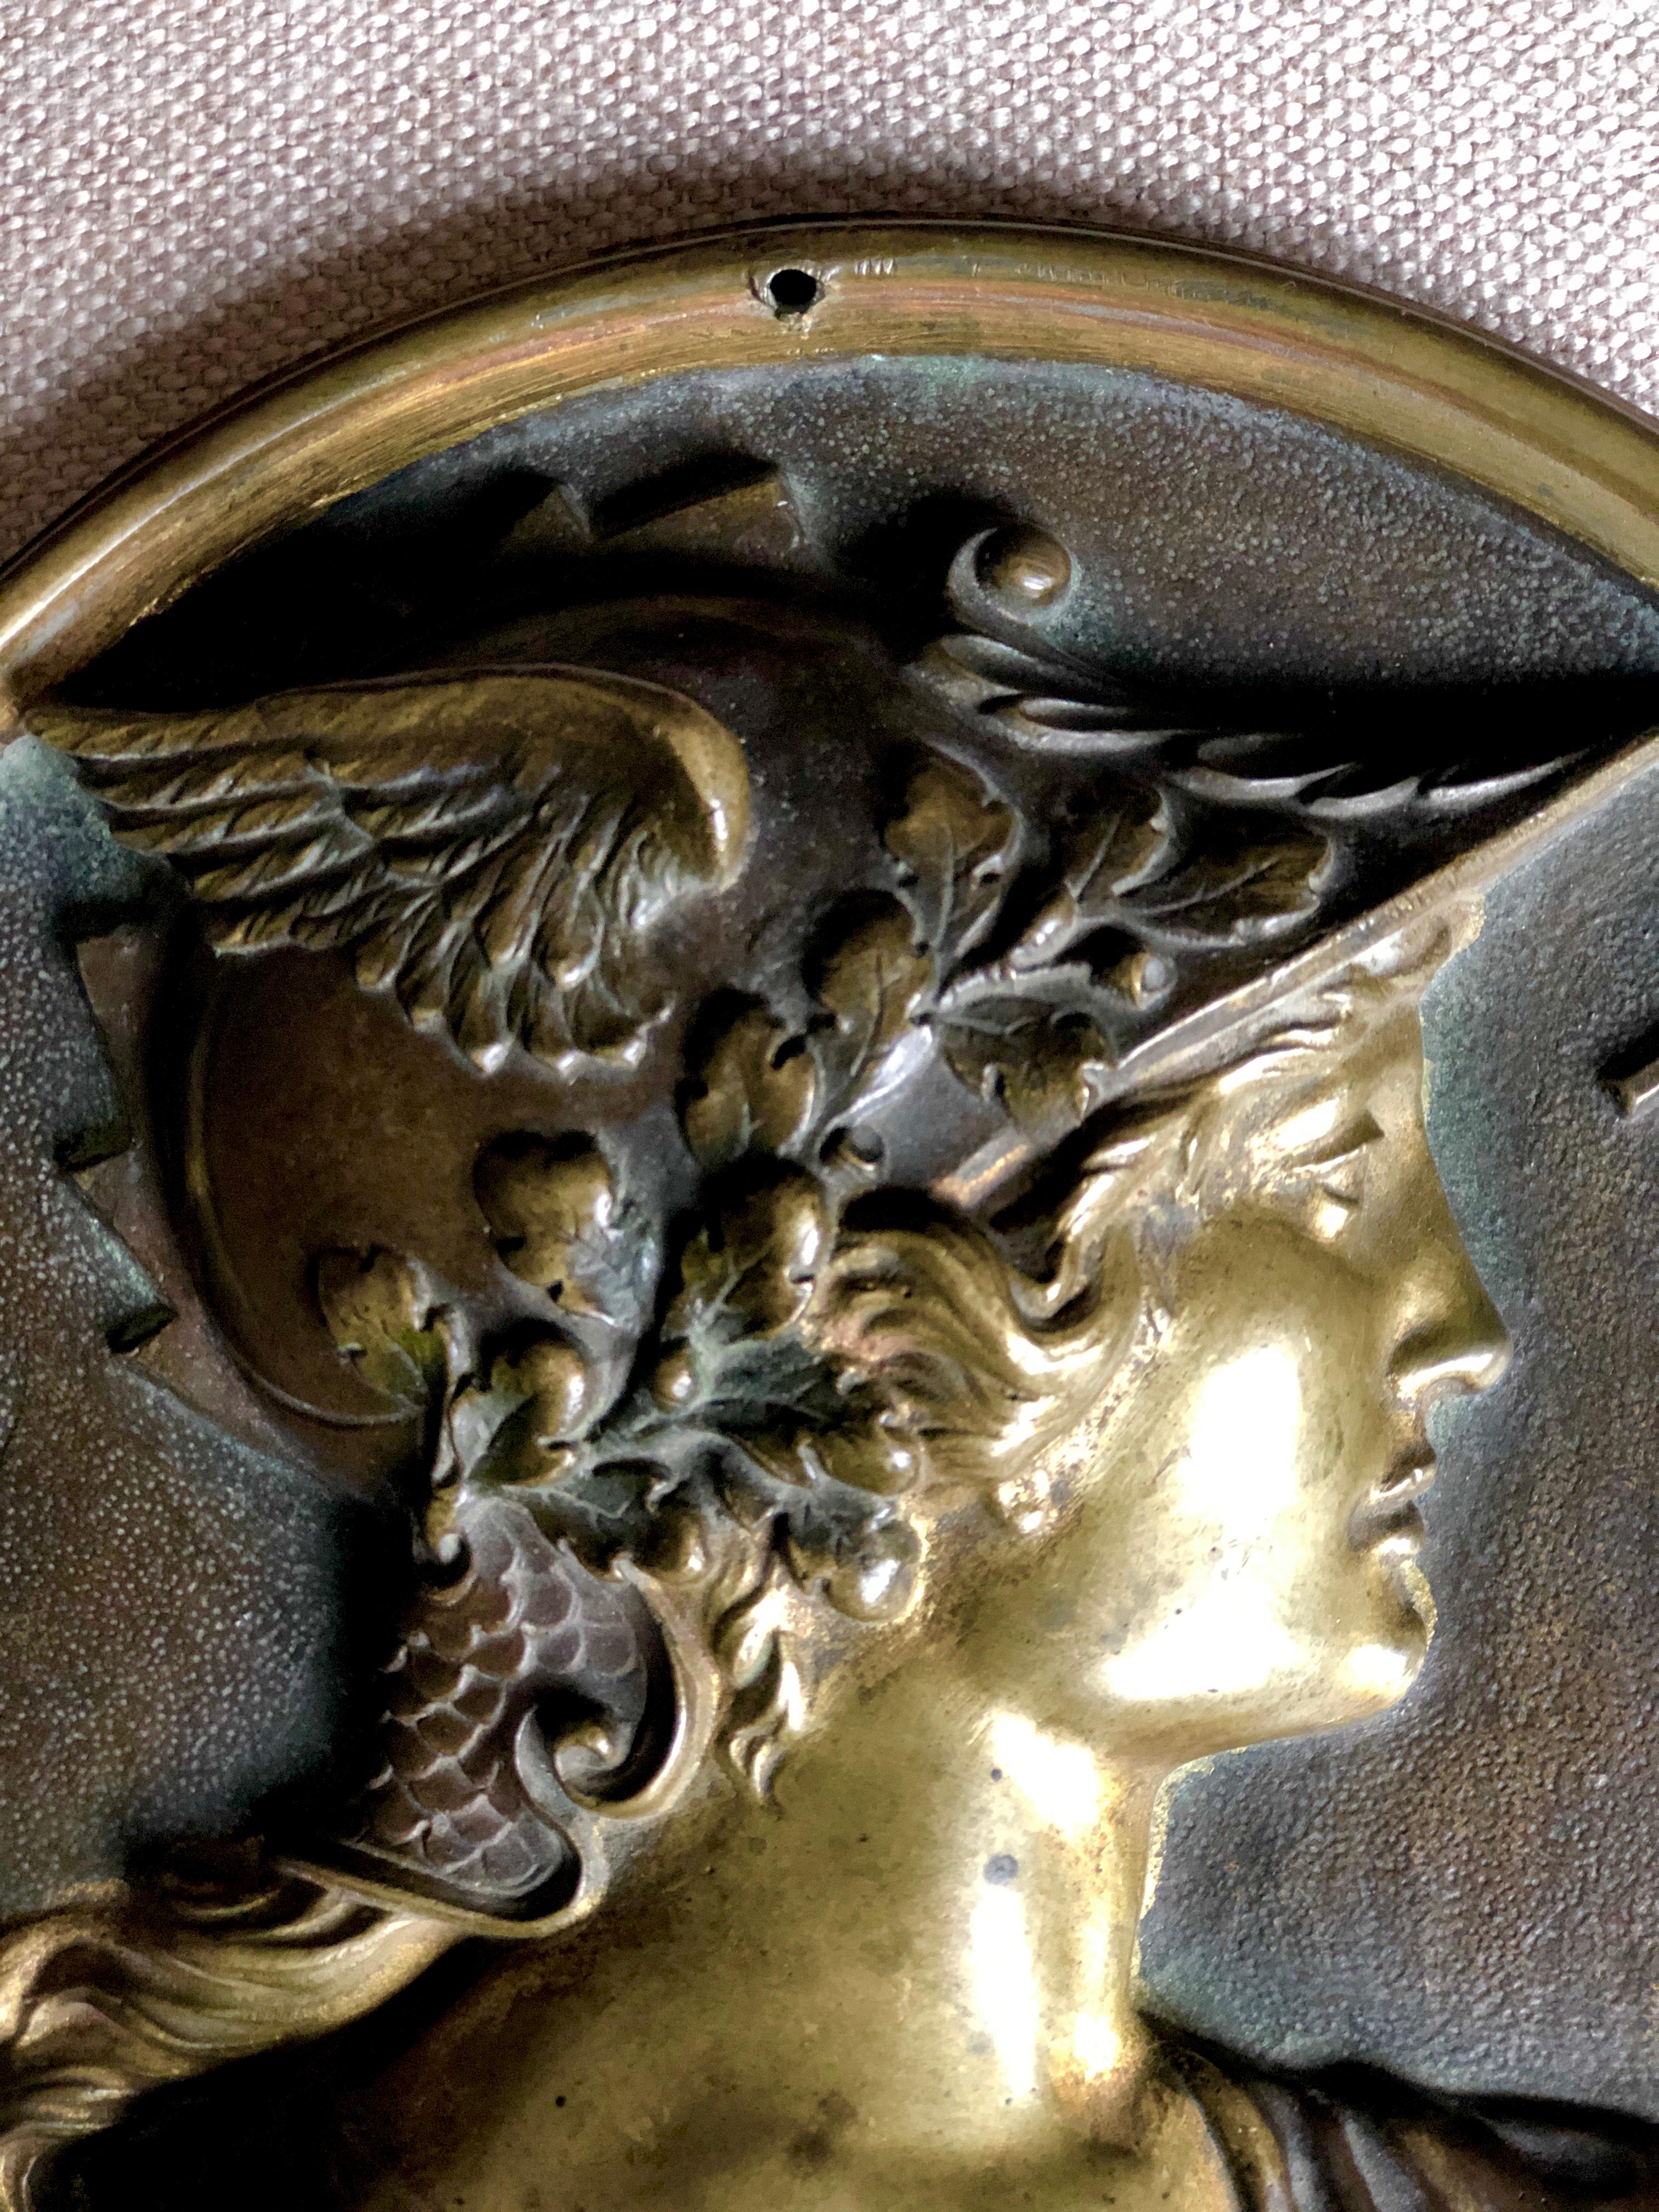 Medaillon aus Bronze Patrie.
Das Reliefporträt hat eine schöne leicht braune Patina.
Frankreich, um 1905